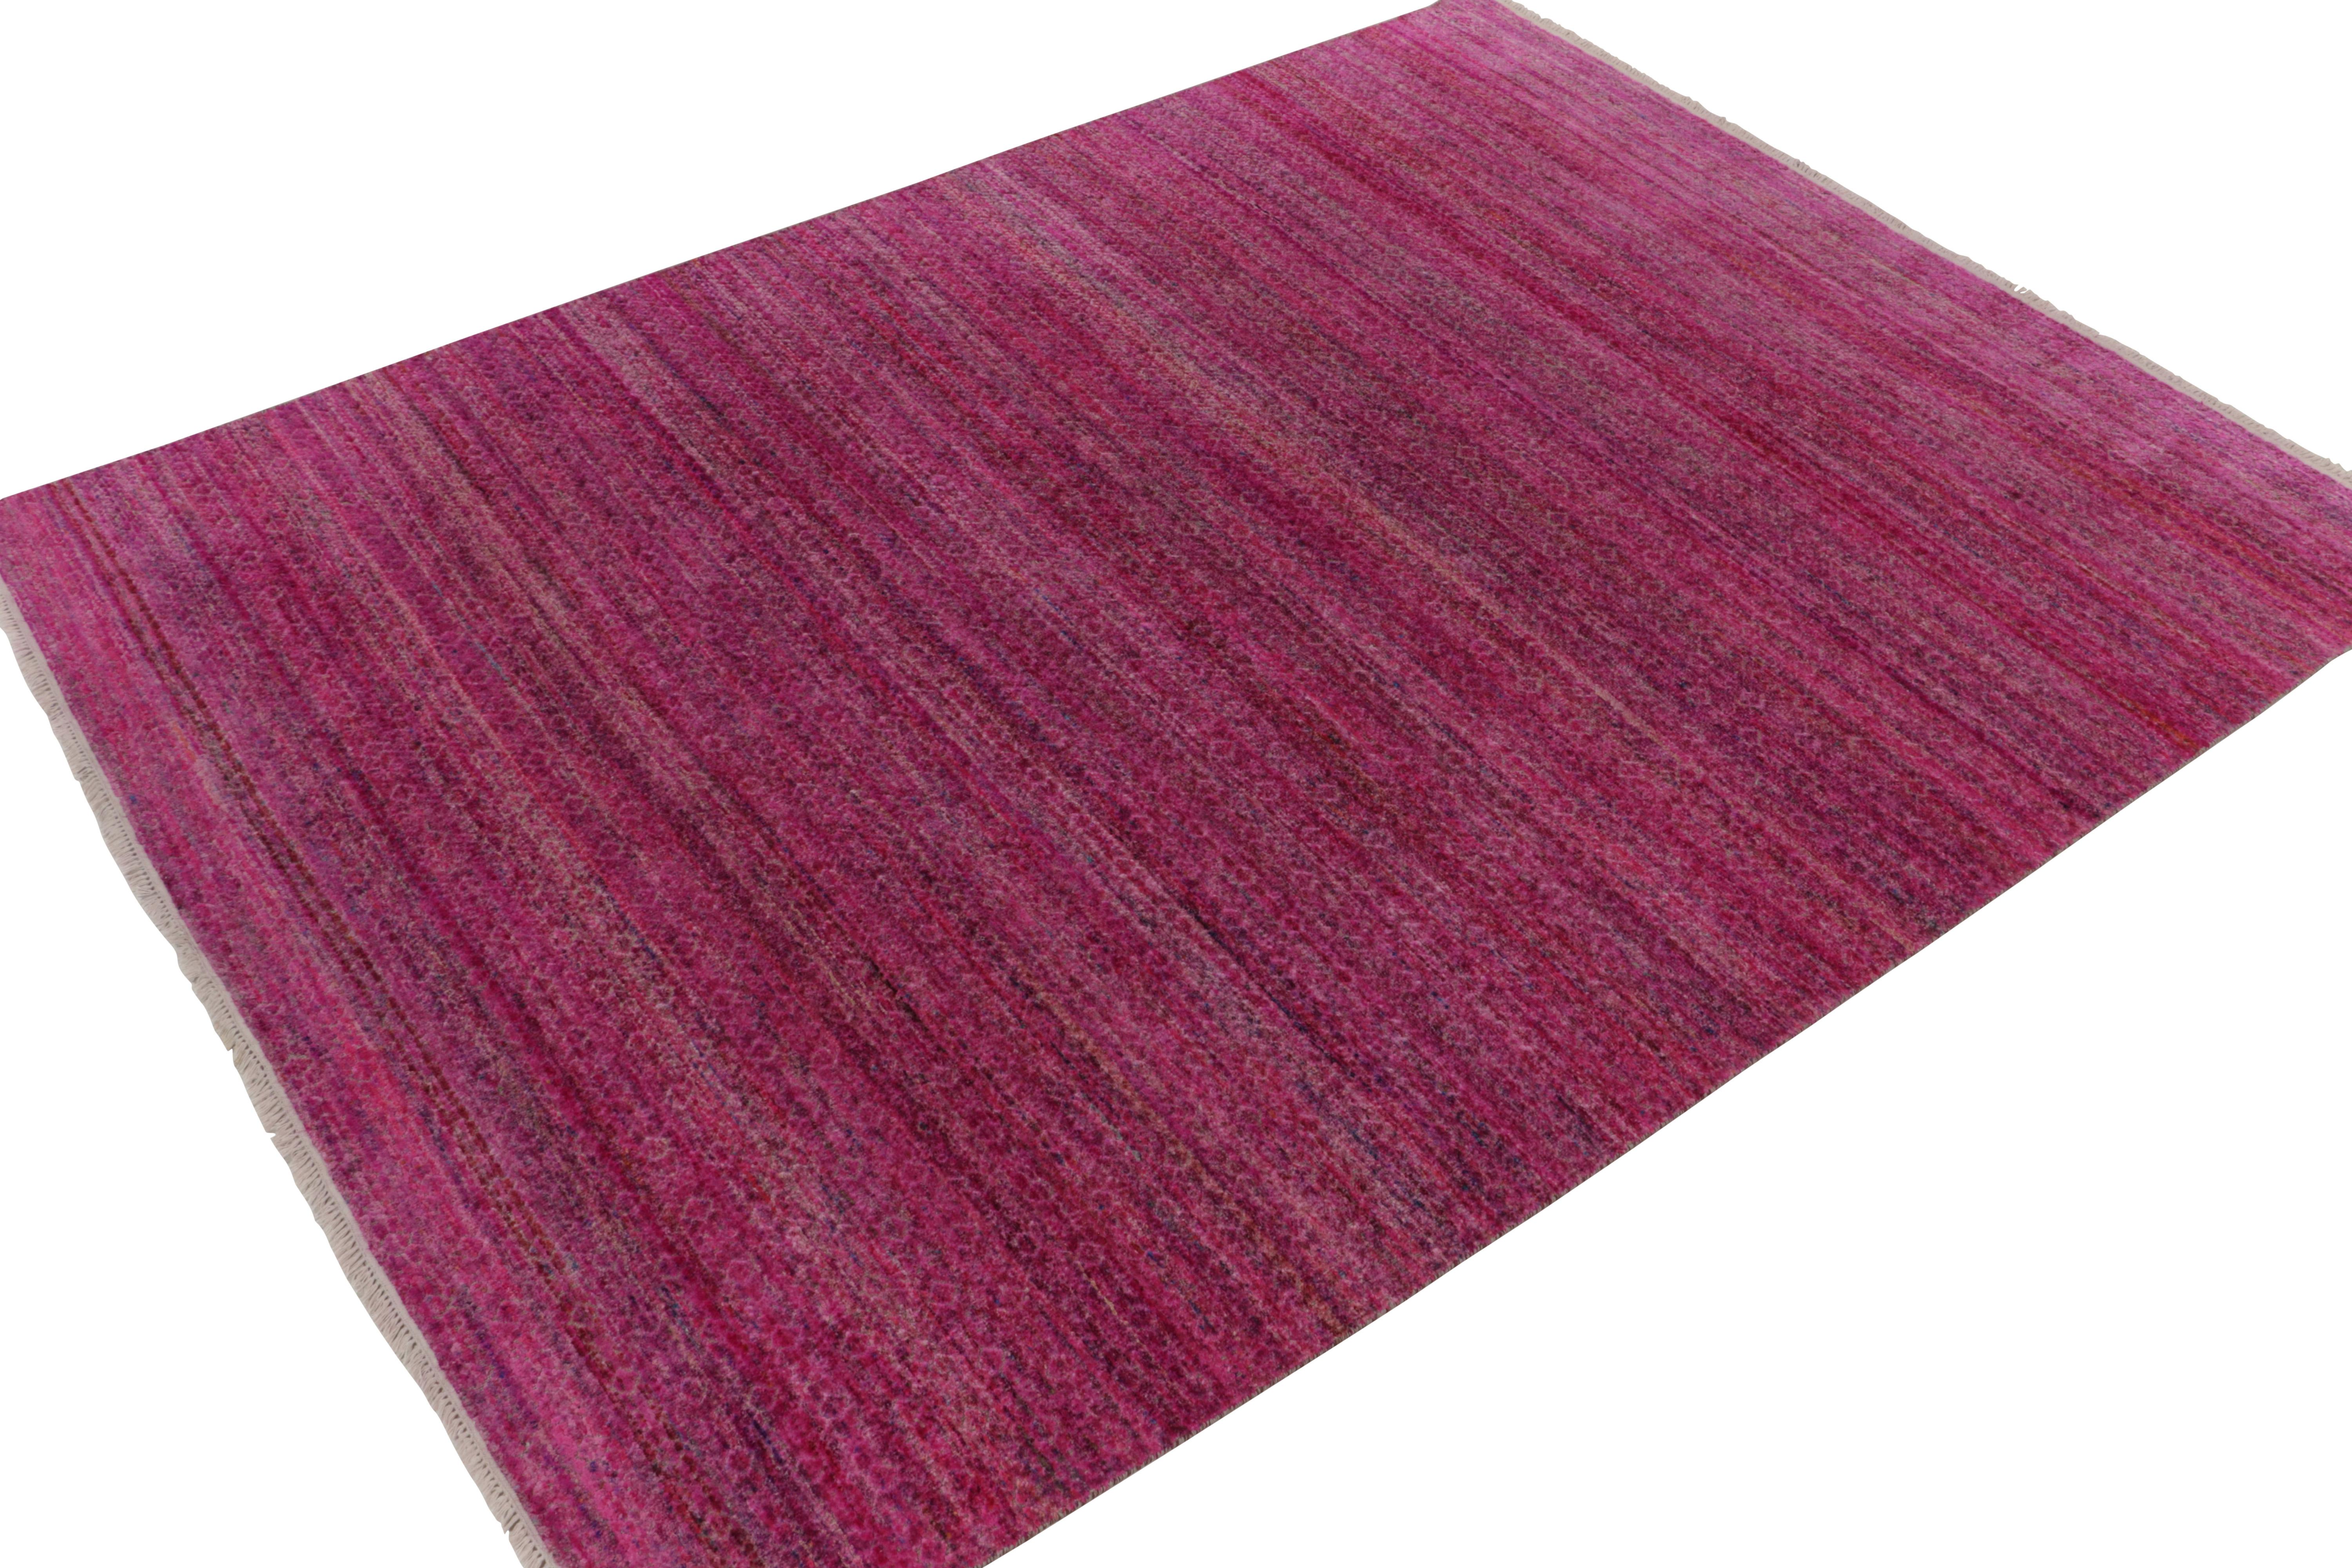 Parmi les œuvres modernes et audacieuses de Rug & Kilim, une version inventive 9x12 des tapis unis, nouée à la main dans une laine et une soie luxueuses. 

Sur le design : Ce contemporain évoque un impossible motif tamisé par un jeu de couleurs